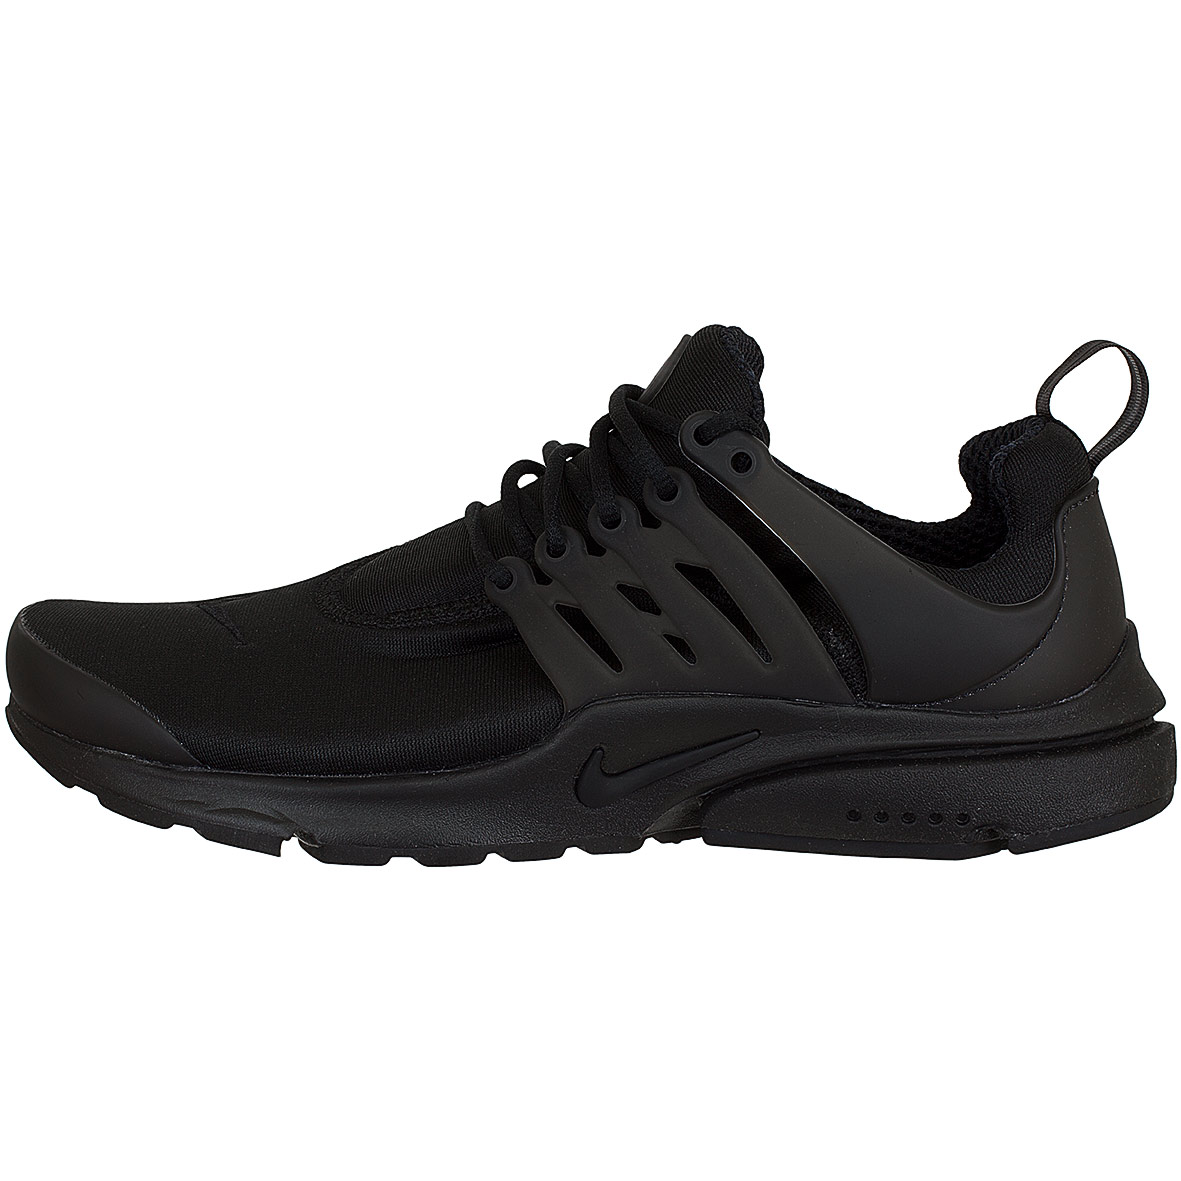 ☆ Nike Sneaker Air Presto Essential schwarz/schwarz - hier bestellen!